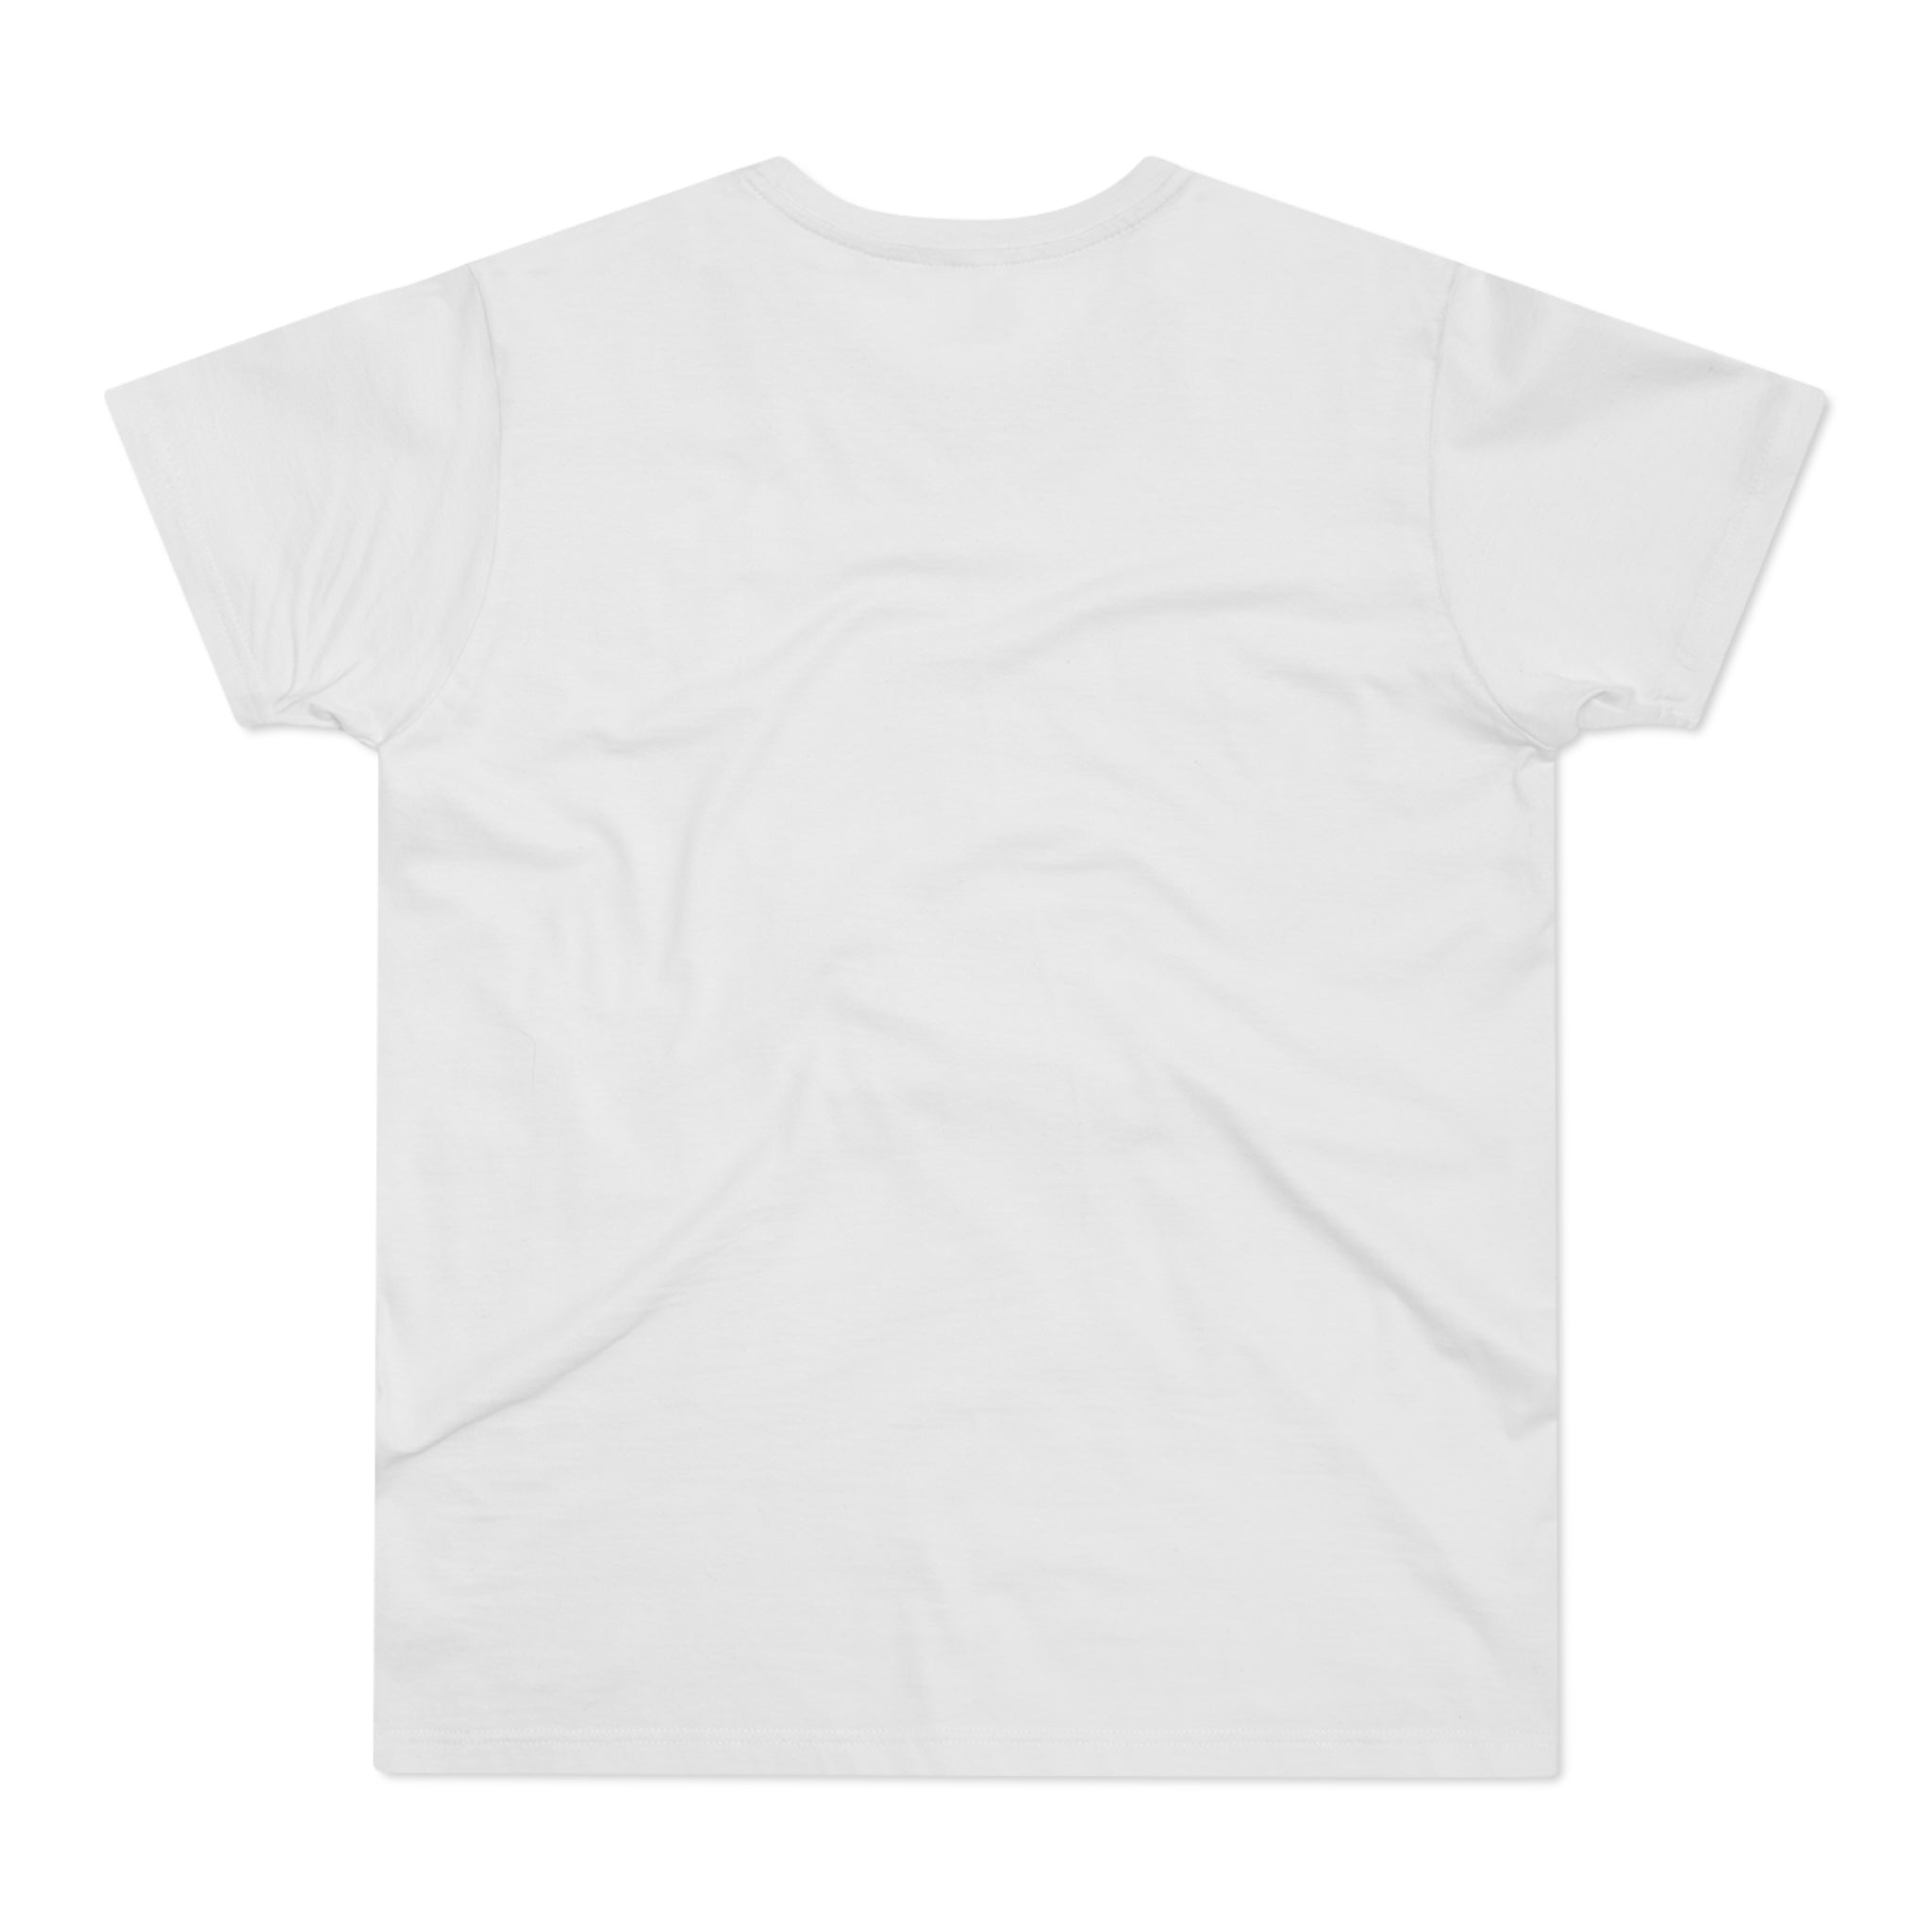 Impossible Men's T-shirt